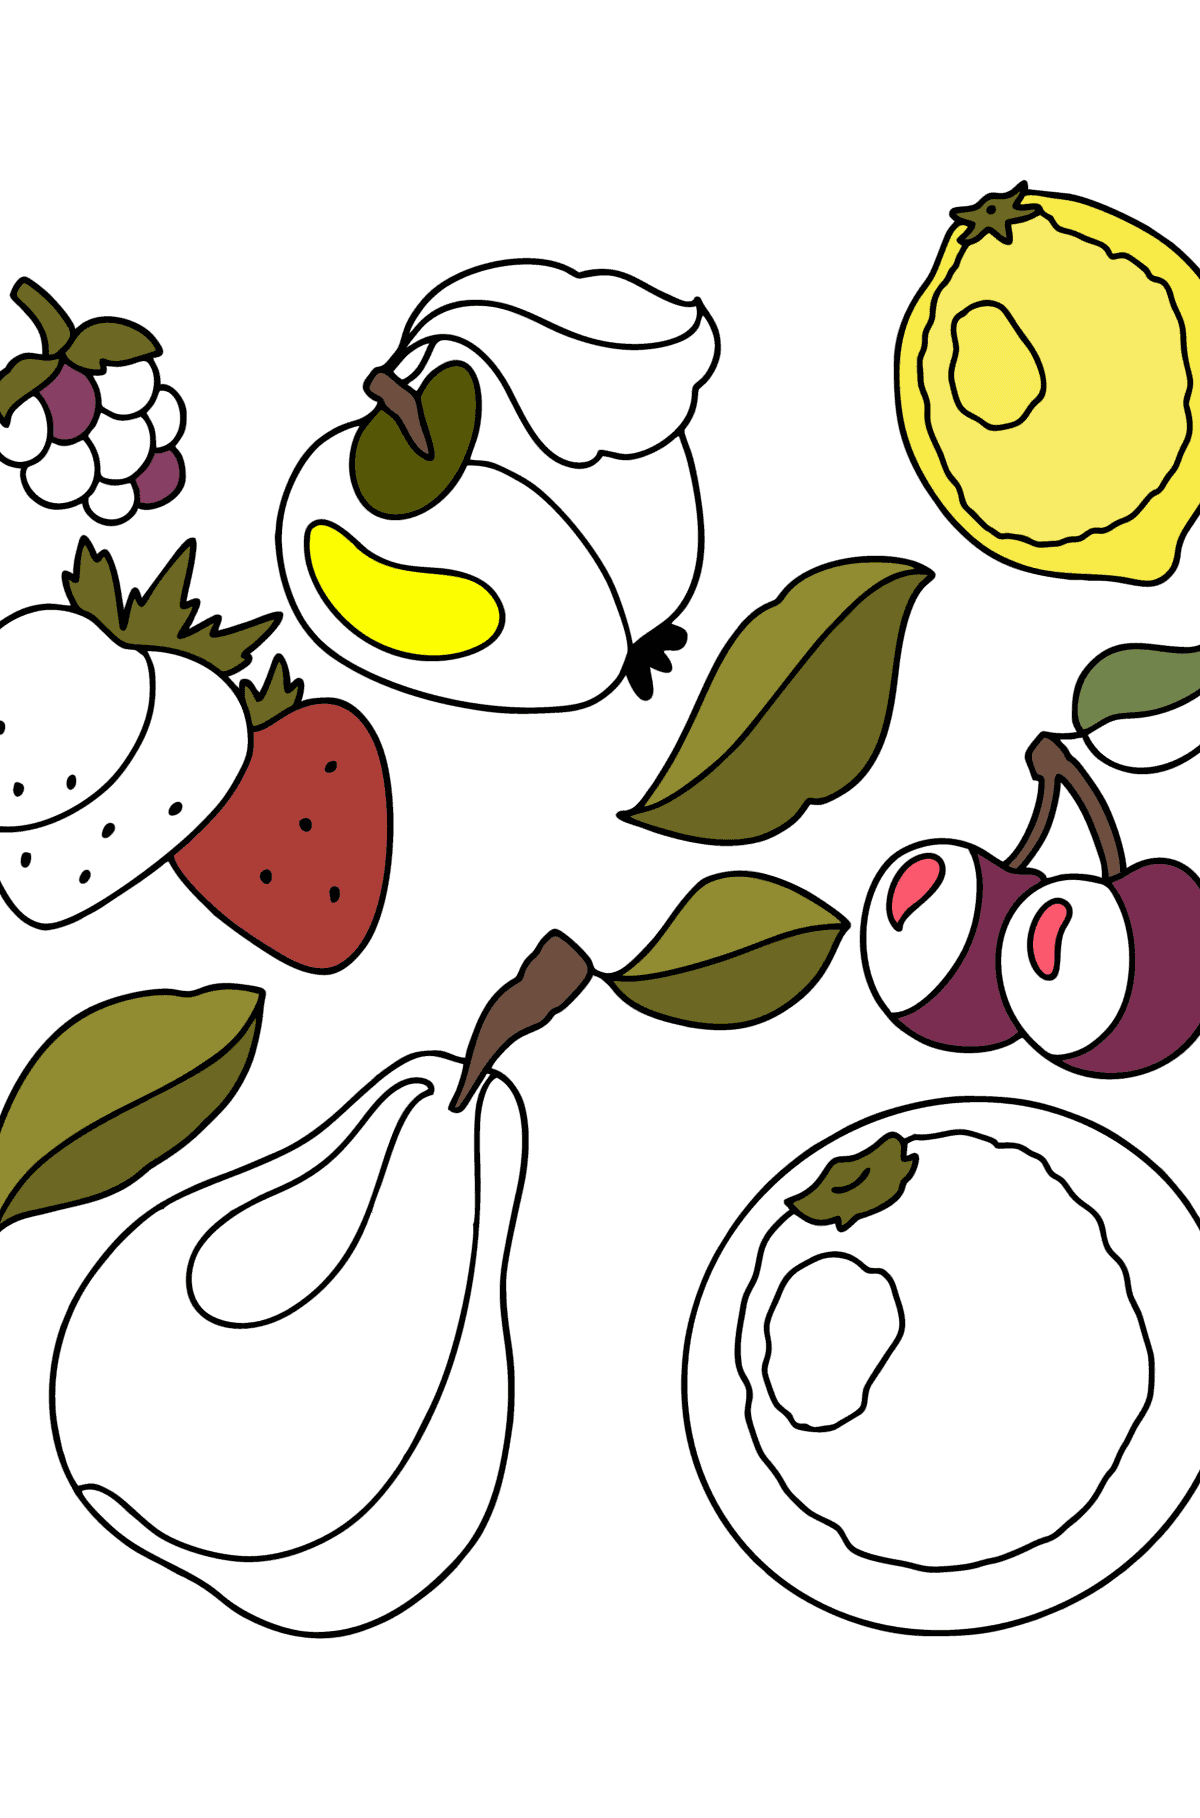 Tegning til fargelegging Fruktsett 1 - Tegninger til fargelegging for barn